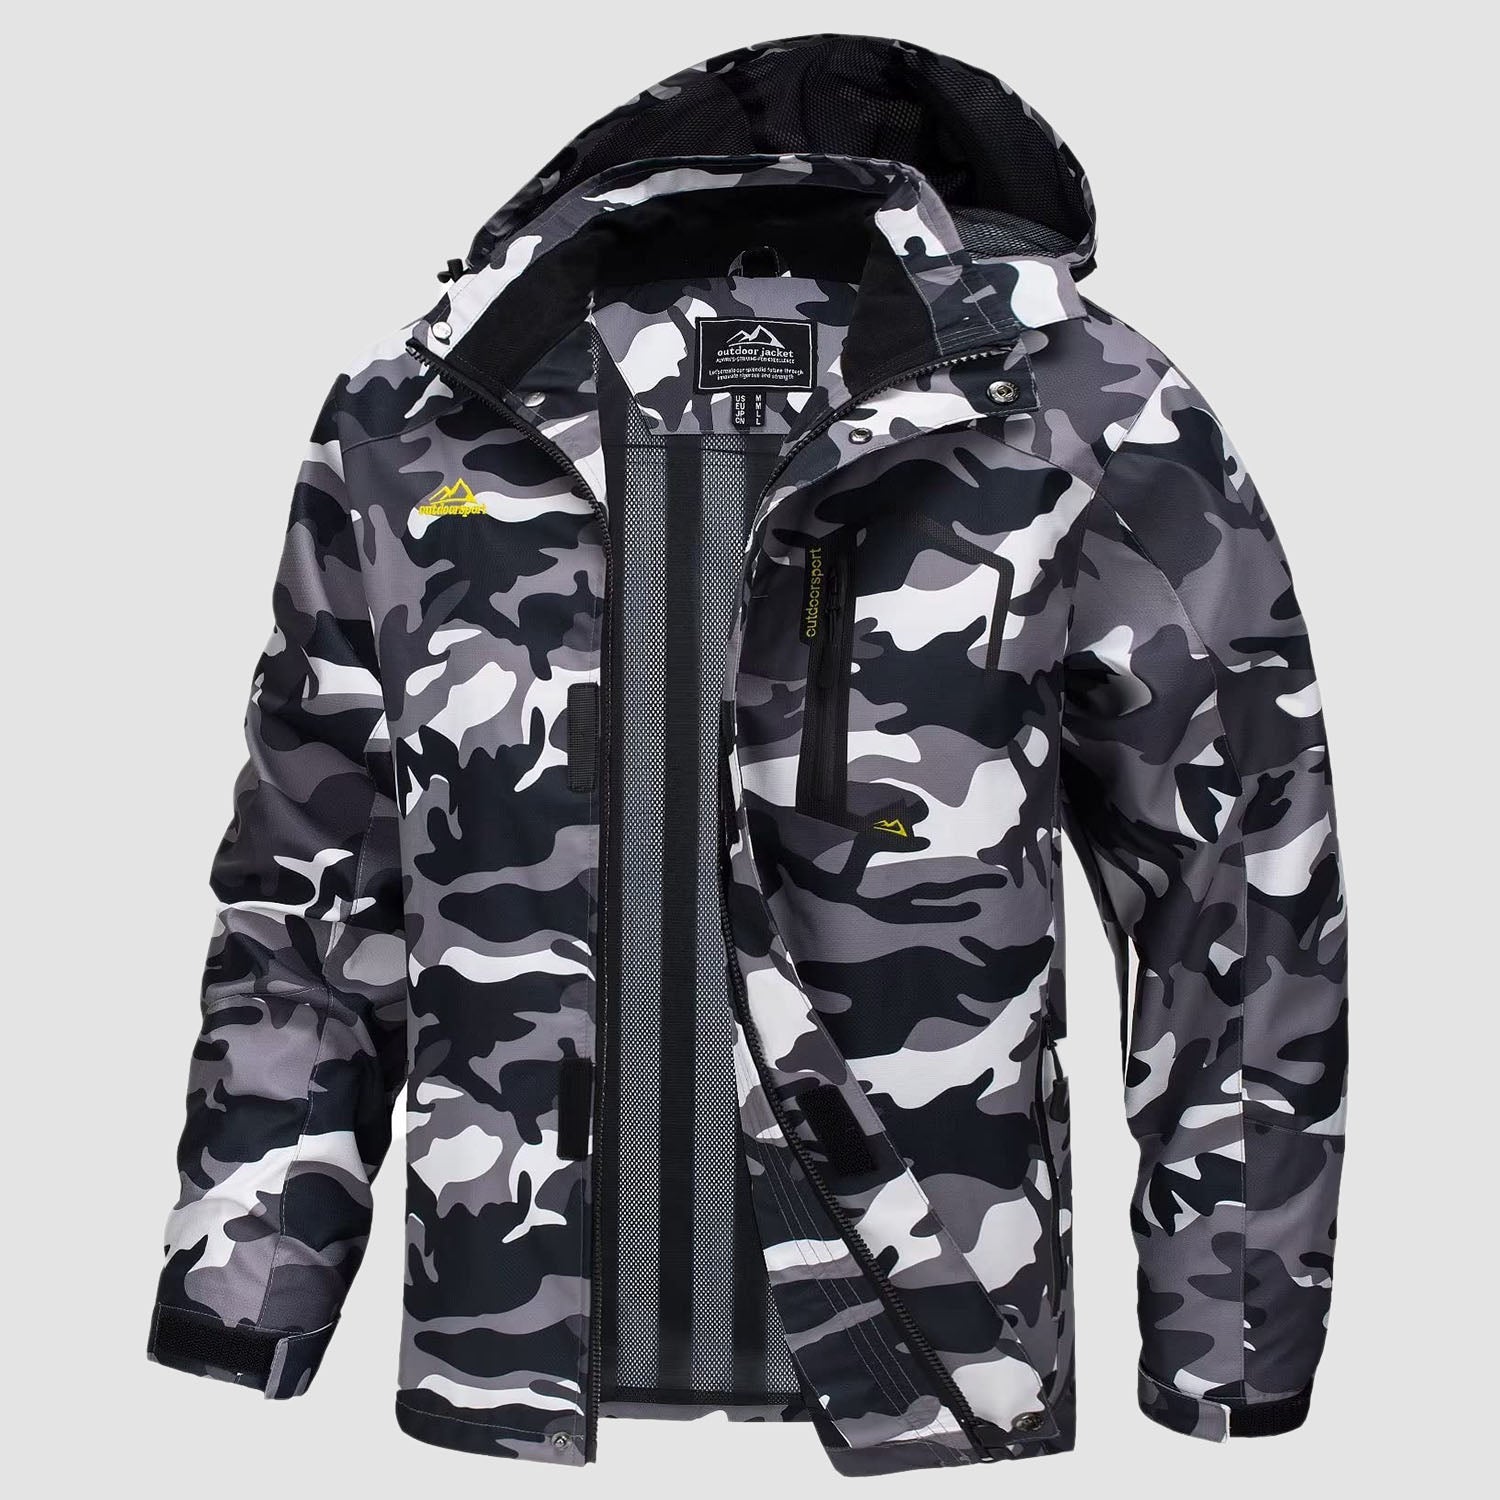 Men's Jacket Water Resistant Windbreaker Coat for Outdoor